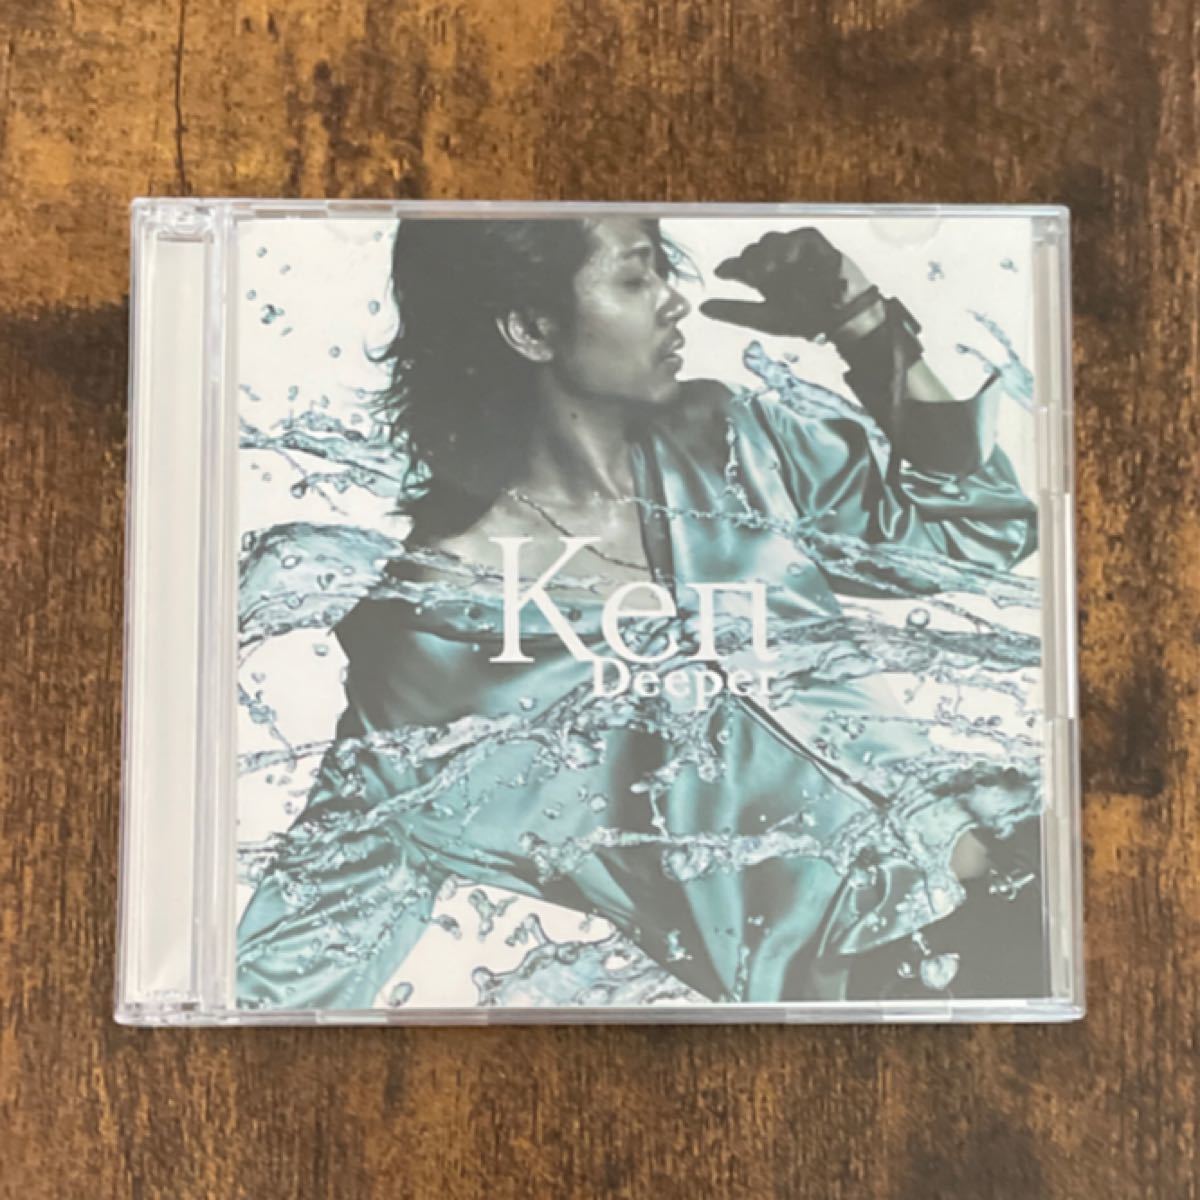 Ken／Deeper【初回仕様限定盤[B]】 CD+DVD